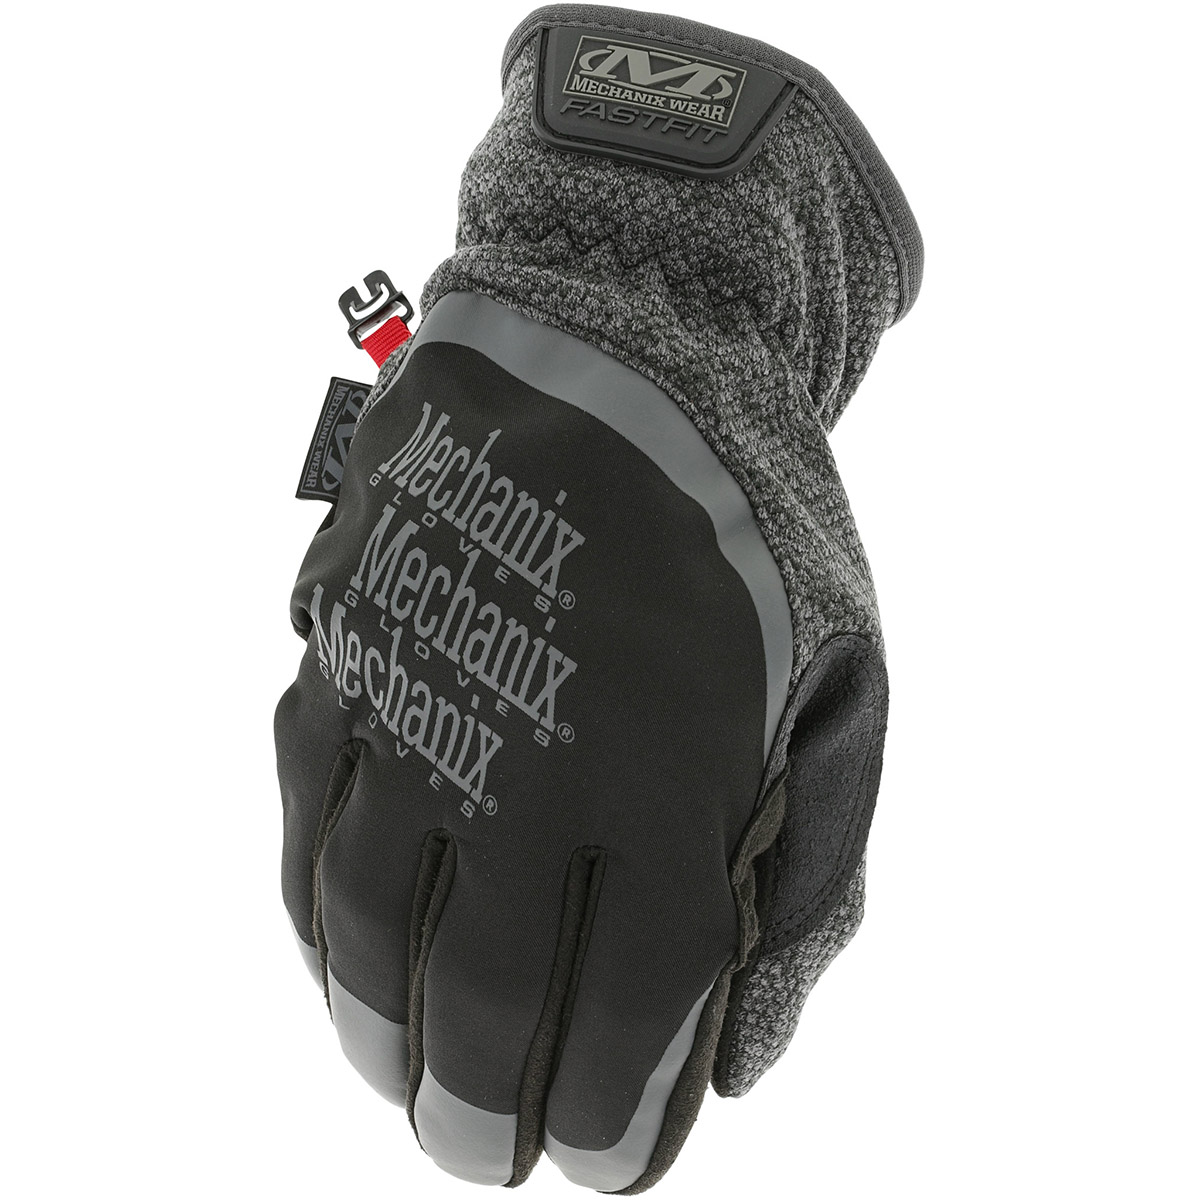 Rękawice taktyczne zimowe Mechanix Wear Cold Weather Wind Resistant (MCW-WR)